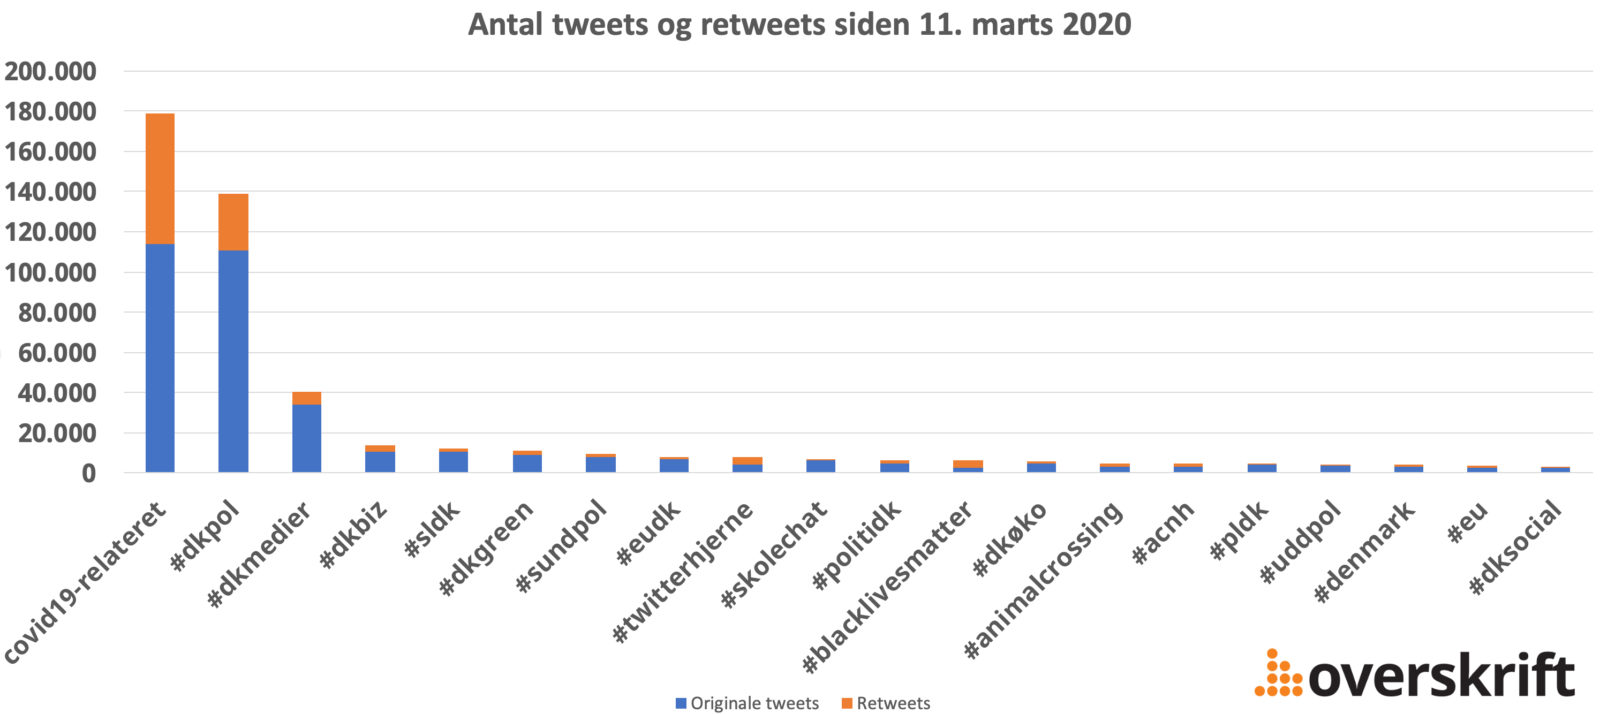 Graf der angiver antallet af anvendte hashtags i Danske tweets siden 11. marts 2020. Corona-relaterede hashtags er samlet og anvendes mere end #dkpol